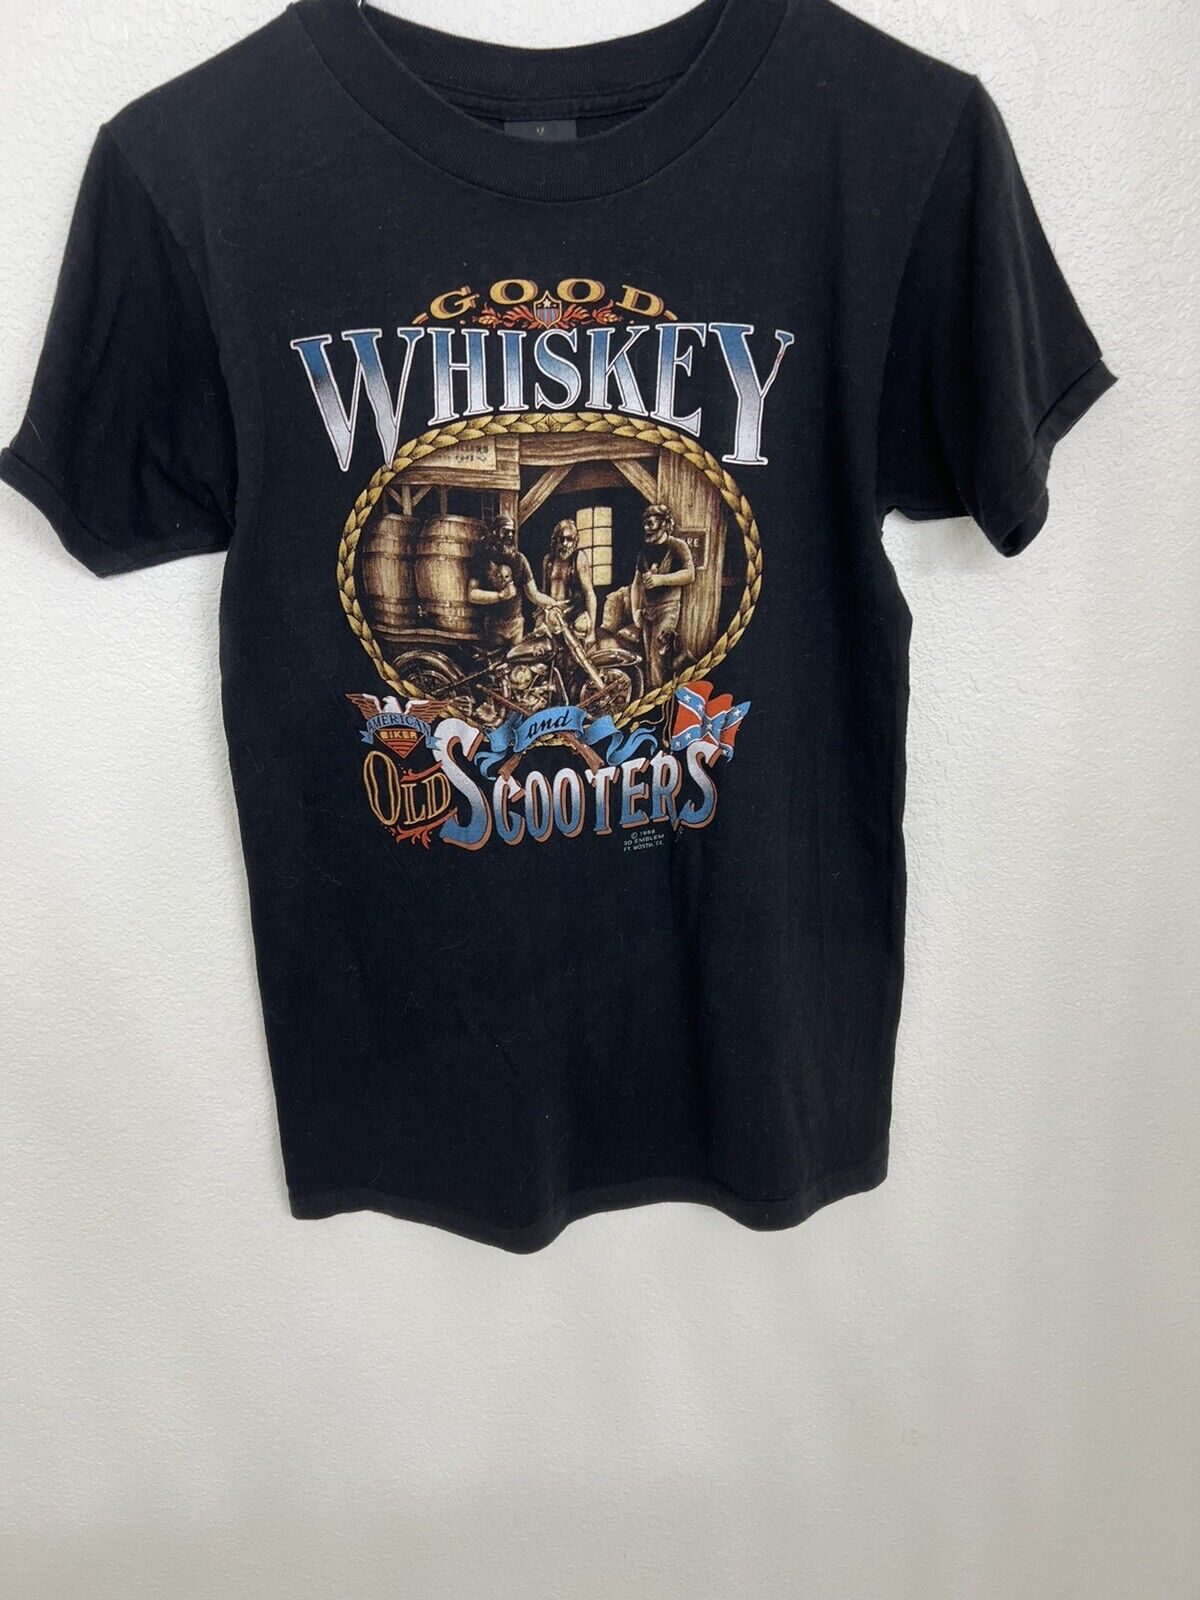 Harley Davidson Vintage 1986 Tshirt 3D Emblem Good Whiskey & Old Scooters